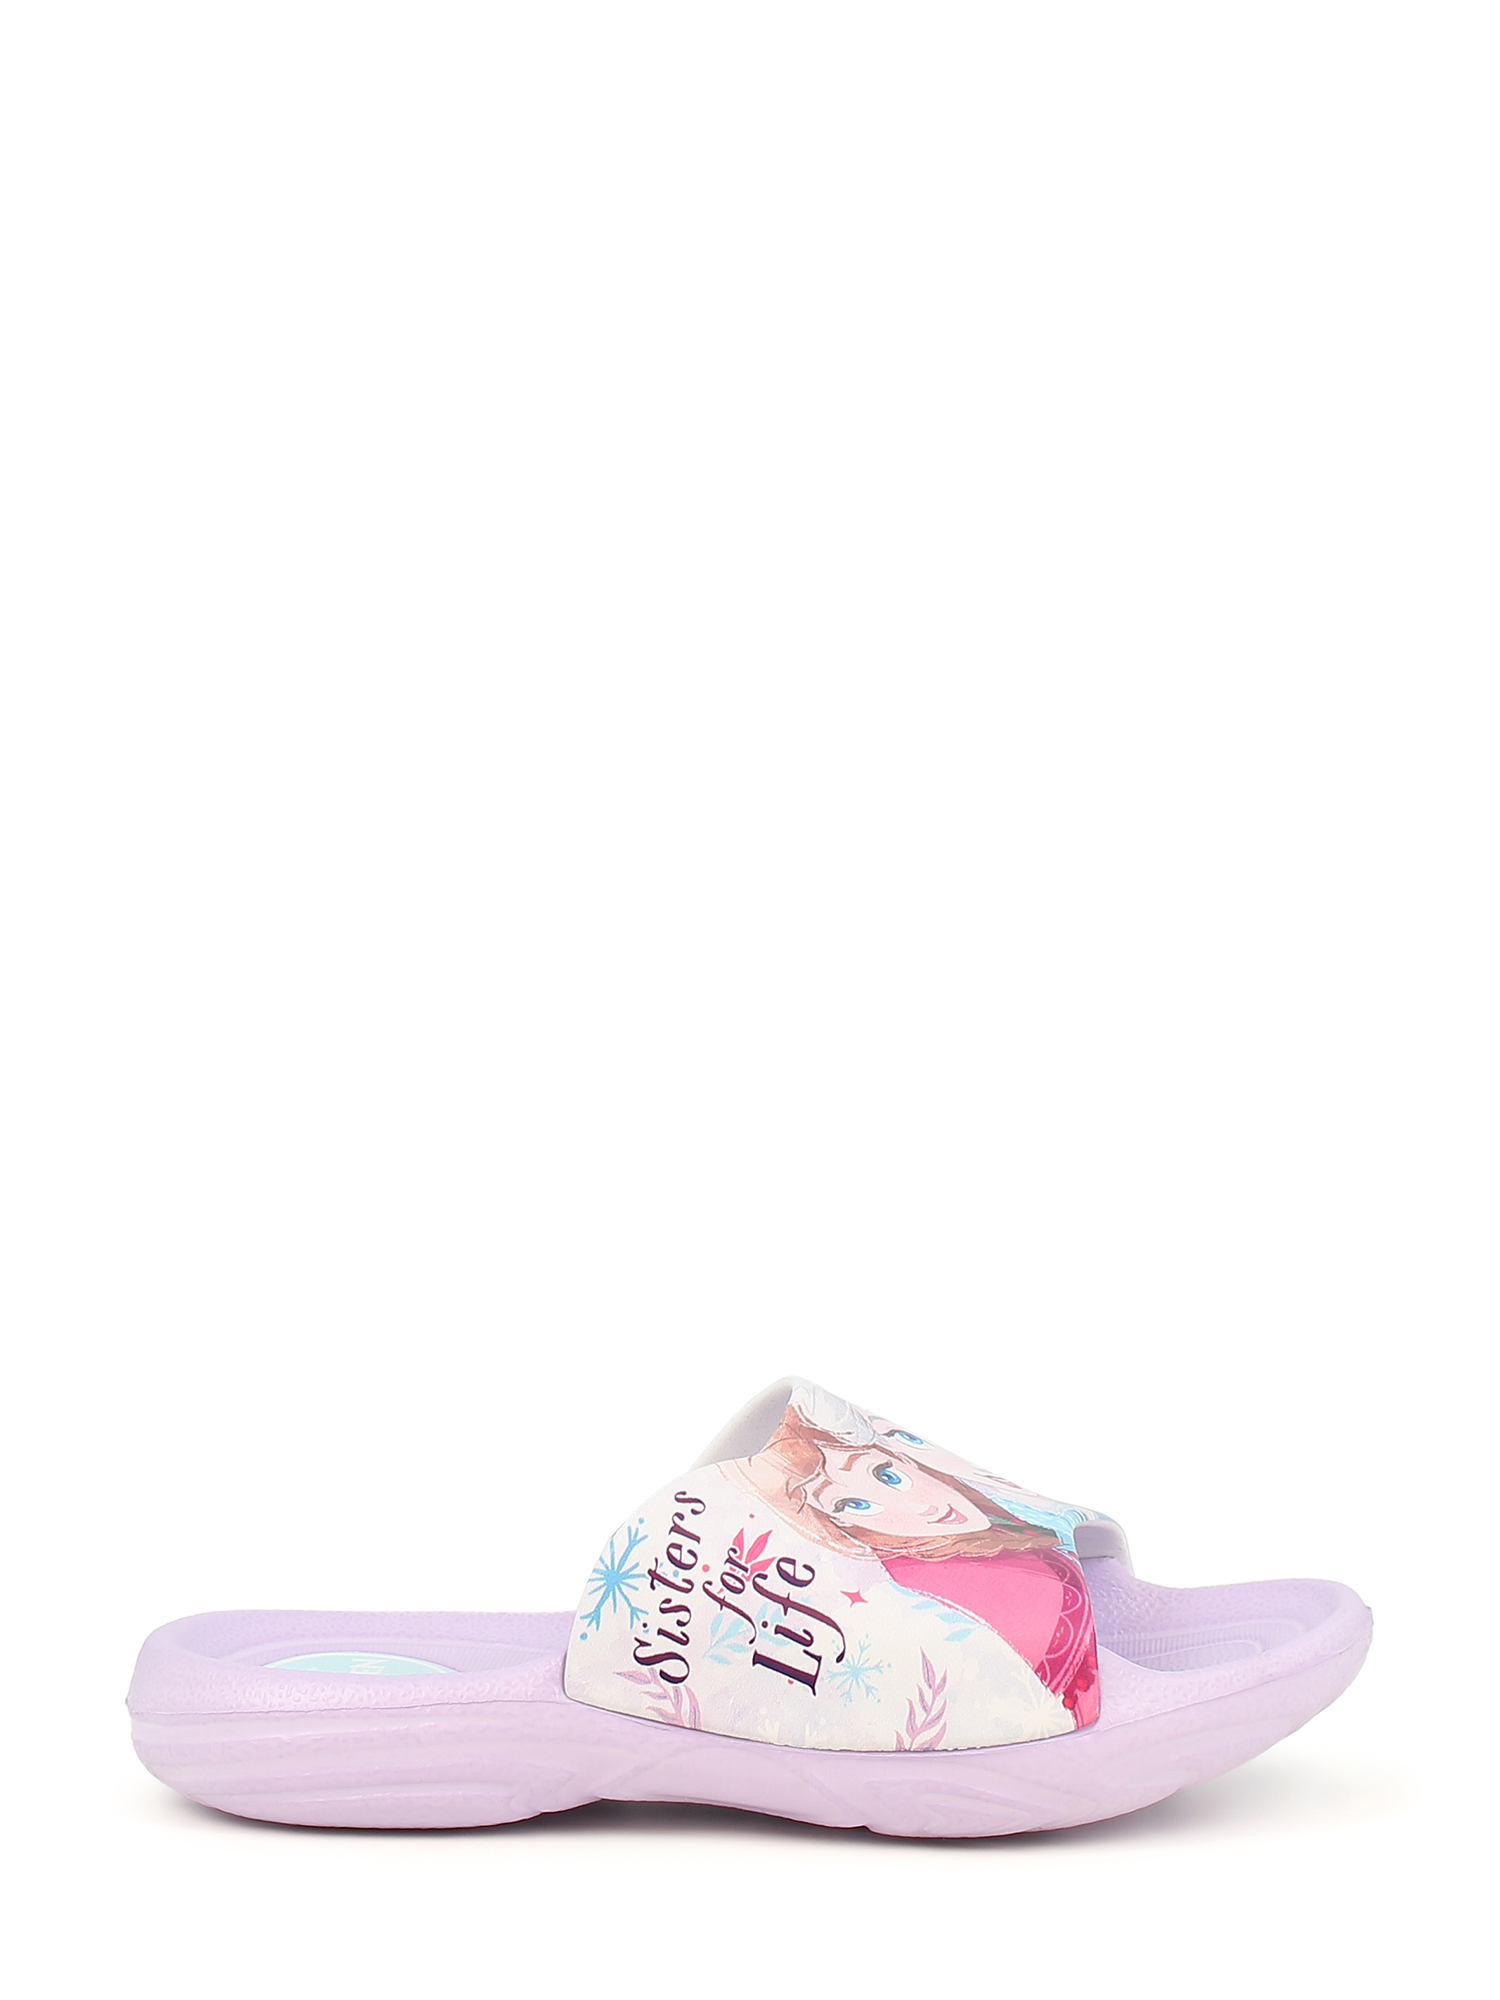 Bilde av Disney Frozen Slippers (29) - Lilla